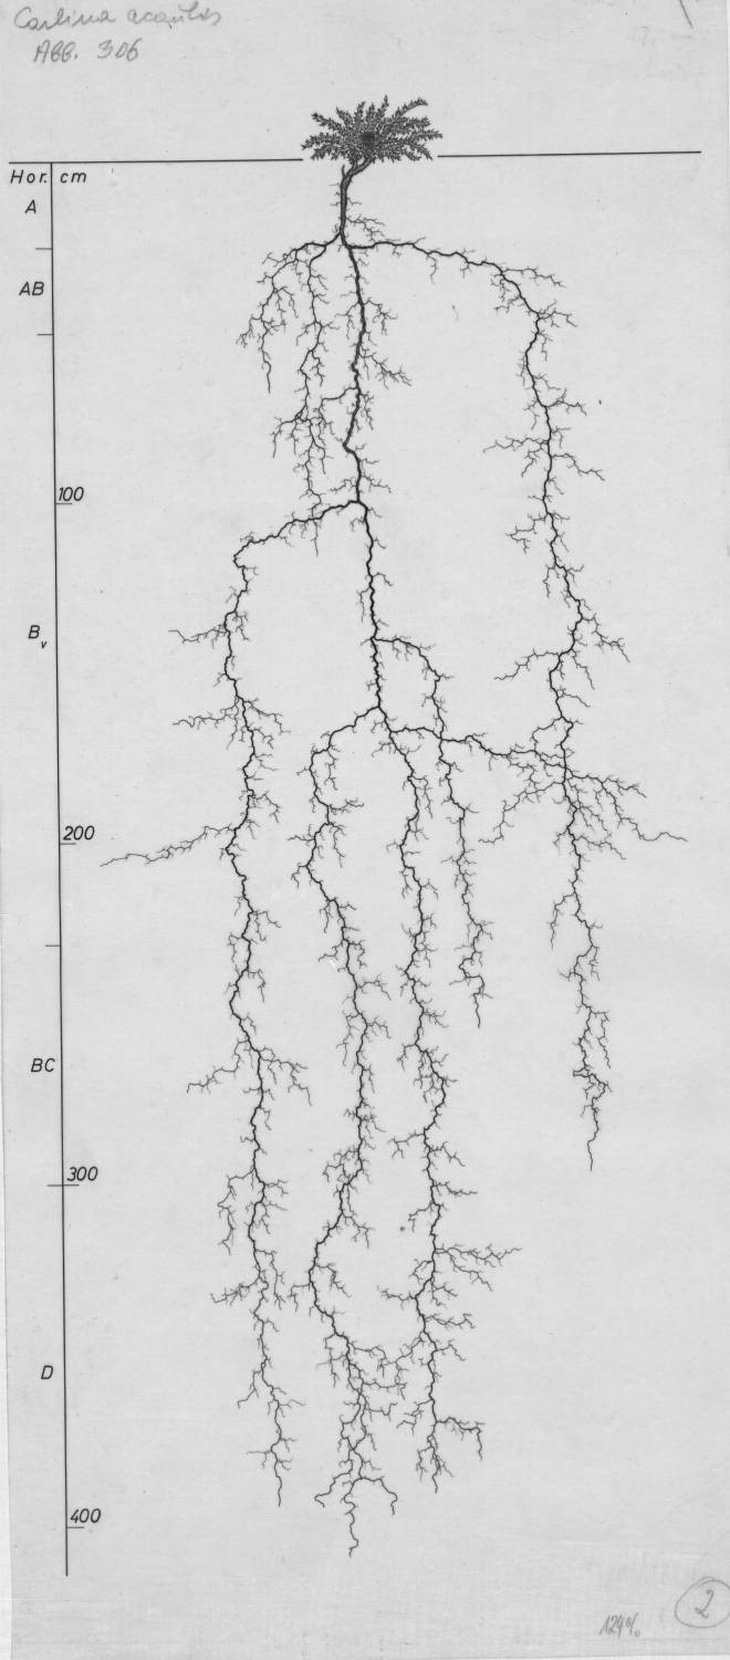 Cây Carlina acaulis này có chiều cao 19cm, nhưng chiều dài rễ là 408cm và bộ rễ tỏa ra một không gian có đường kính 174cm. Lichtenegger, E. vẽ năm 1992.